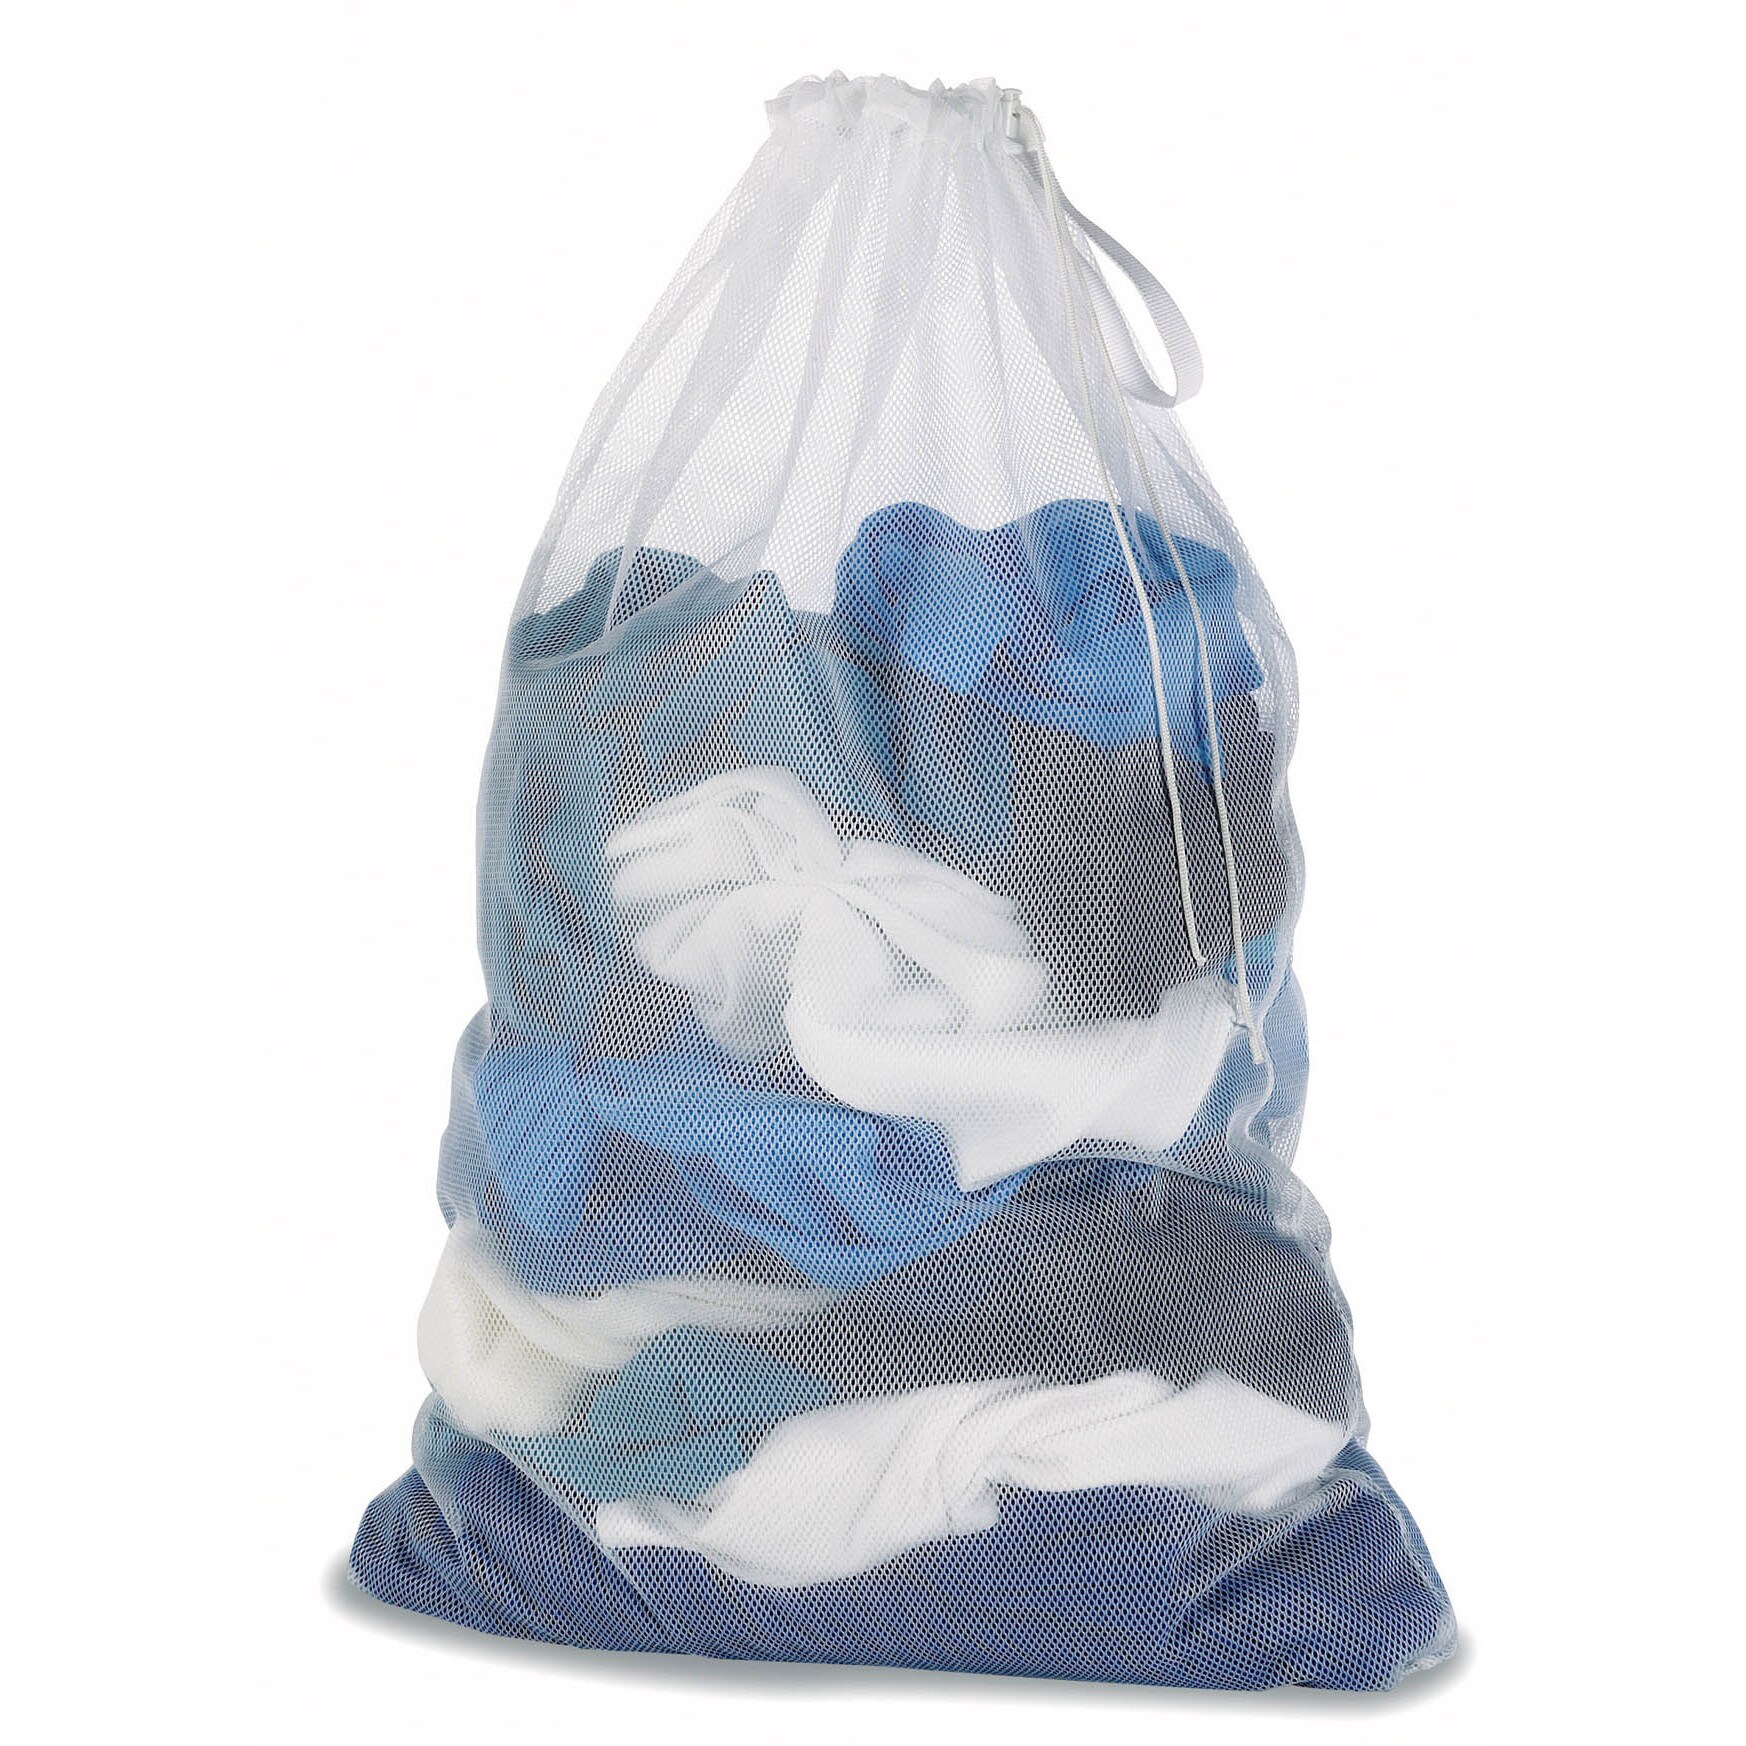  Whitmor Mesh Laundry Bag - White, 6154-111 : Home